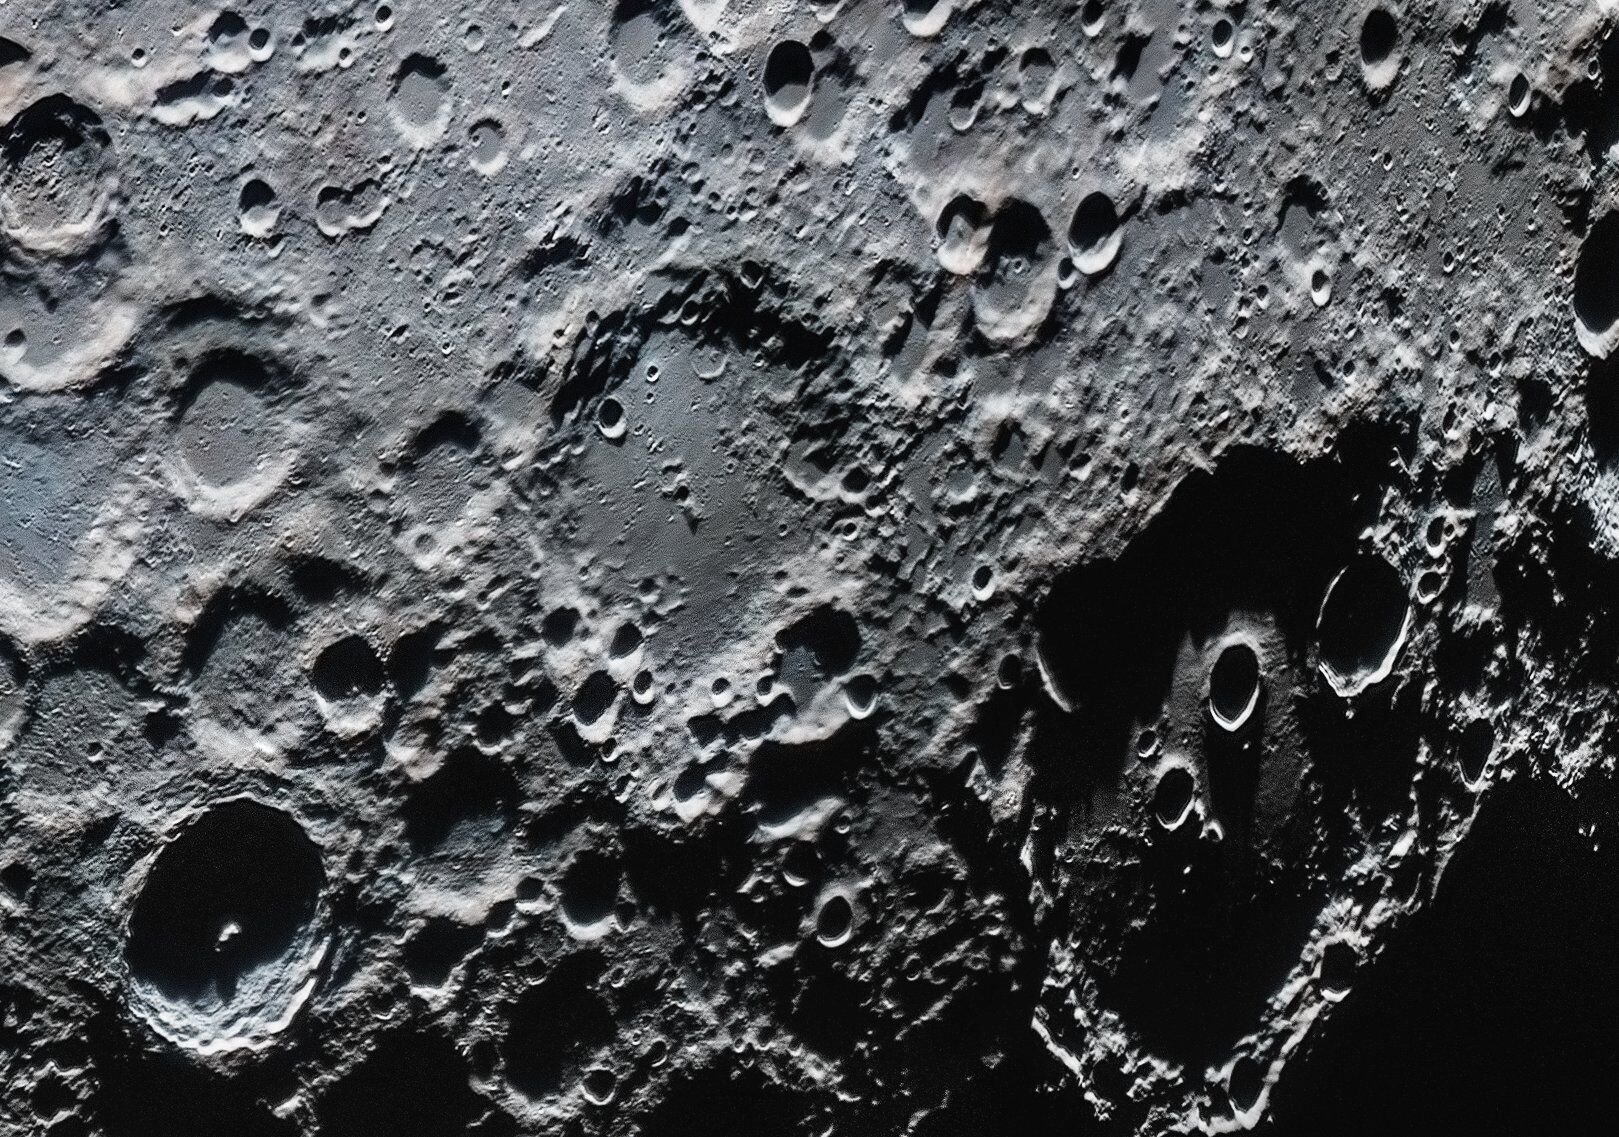 Фрагмент полноразмерного изображения Луны